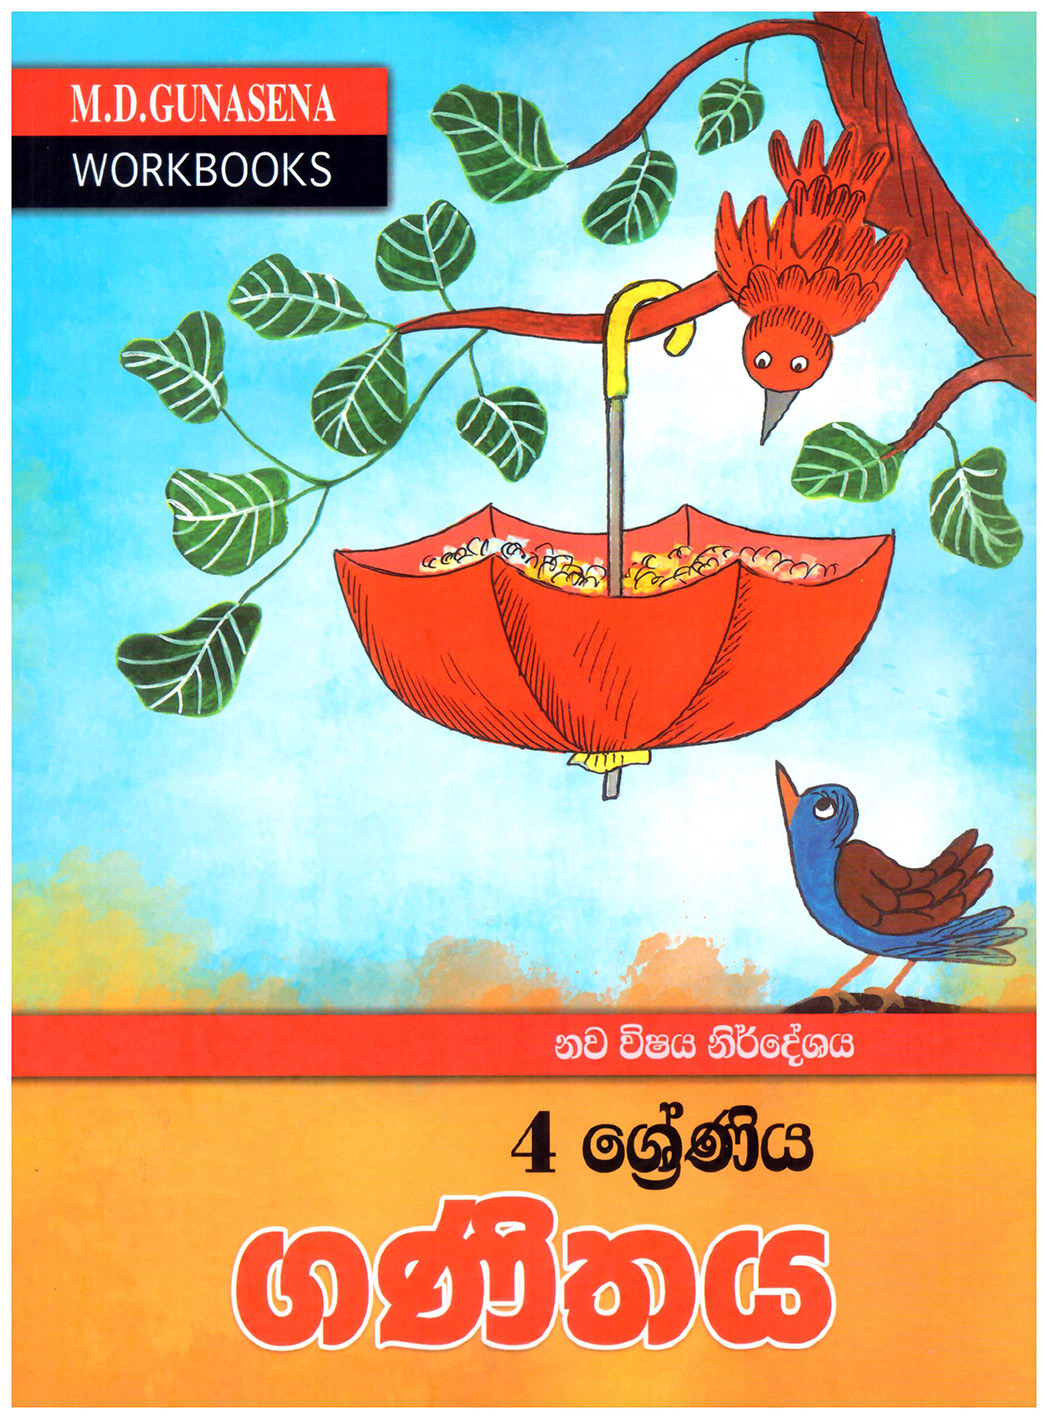 M.D. Gunasena Workbooks : Ganithaya 04 Shreniya